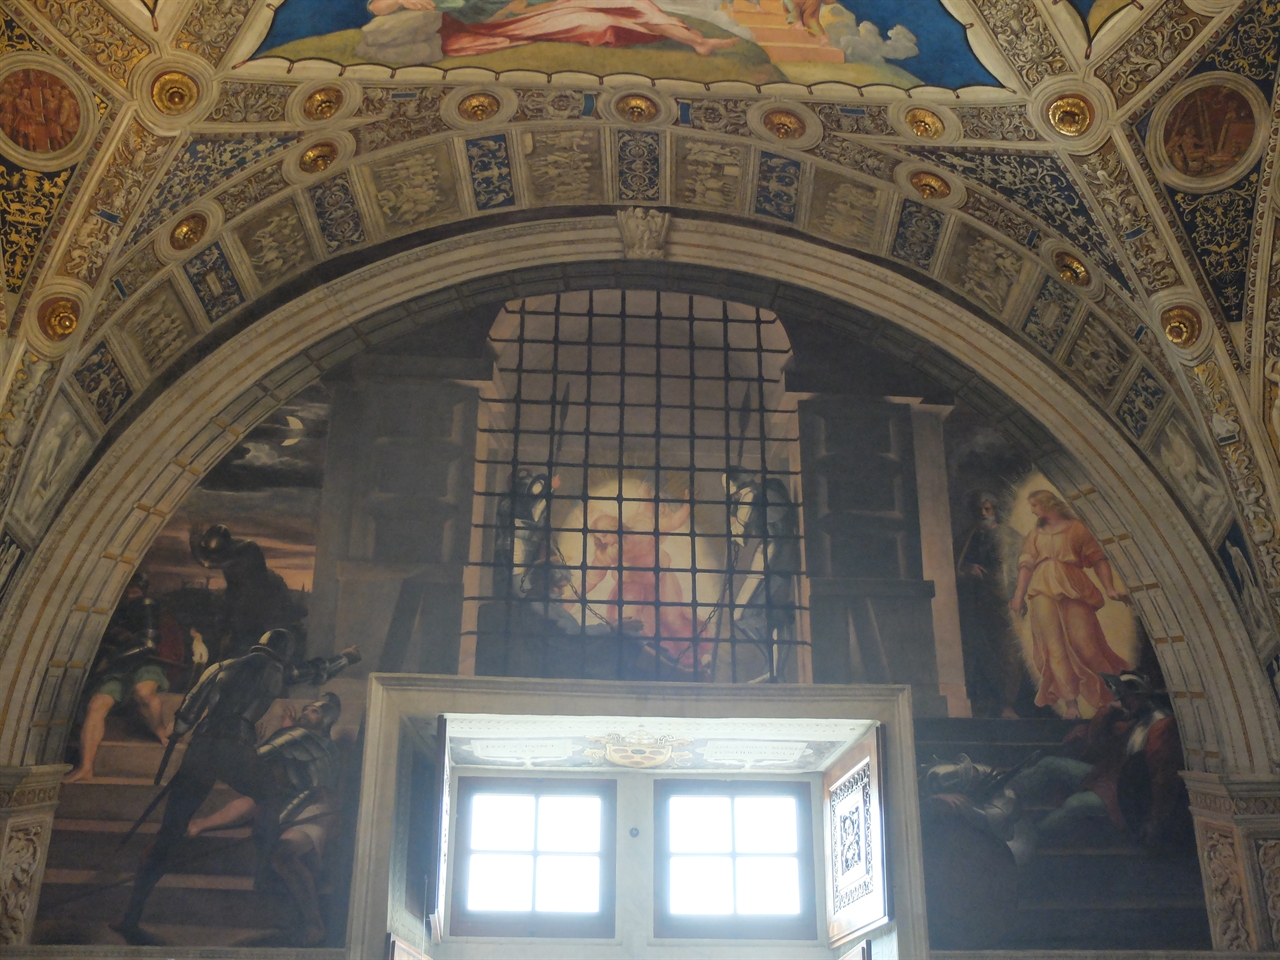 라파엘로, ‘감옥에서 구출되는 성 베드로’, 바티칸 박물관 엘리오도로의 방. 창을 통해서 들어오는 햇빛 때문에 그림을 감상하기가 쉽지 않습니다.